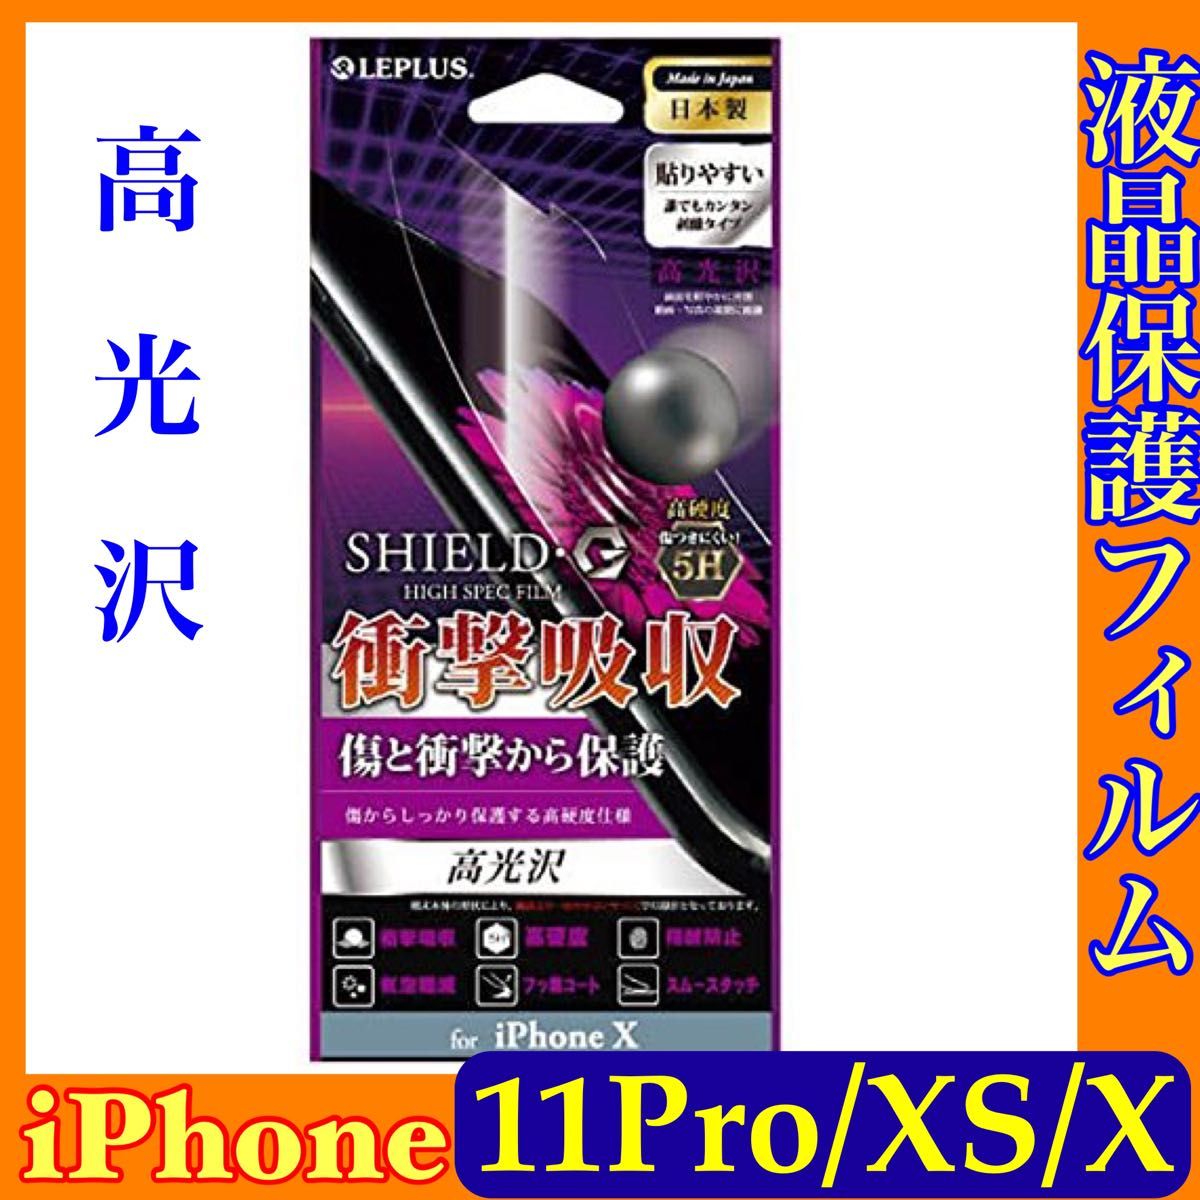 iPhone11Pro/XS/X 保護フィルム 高光沢 SHIELD G HIGH SPEC FILM LP-I8FLG5HA